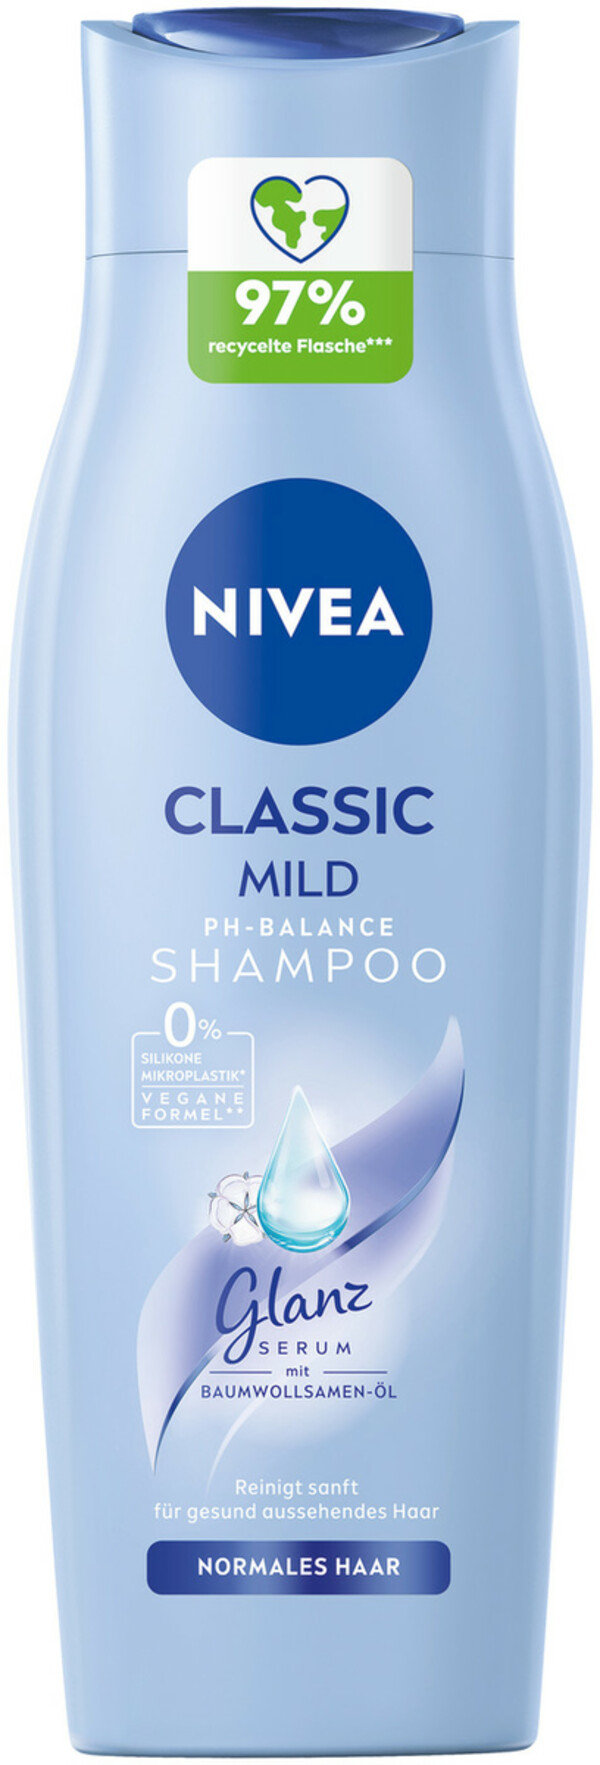 Bild 1 von Nivea Classic Mild Shampoo 250ML